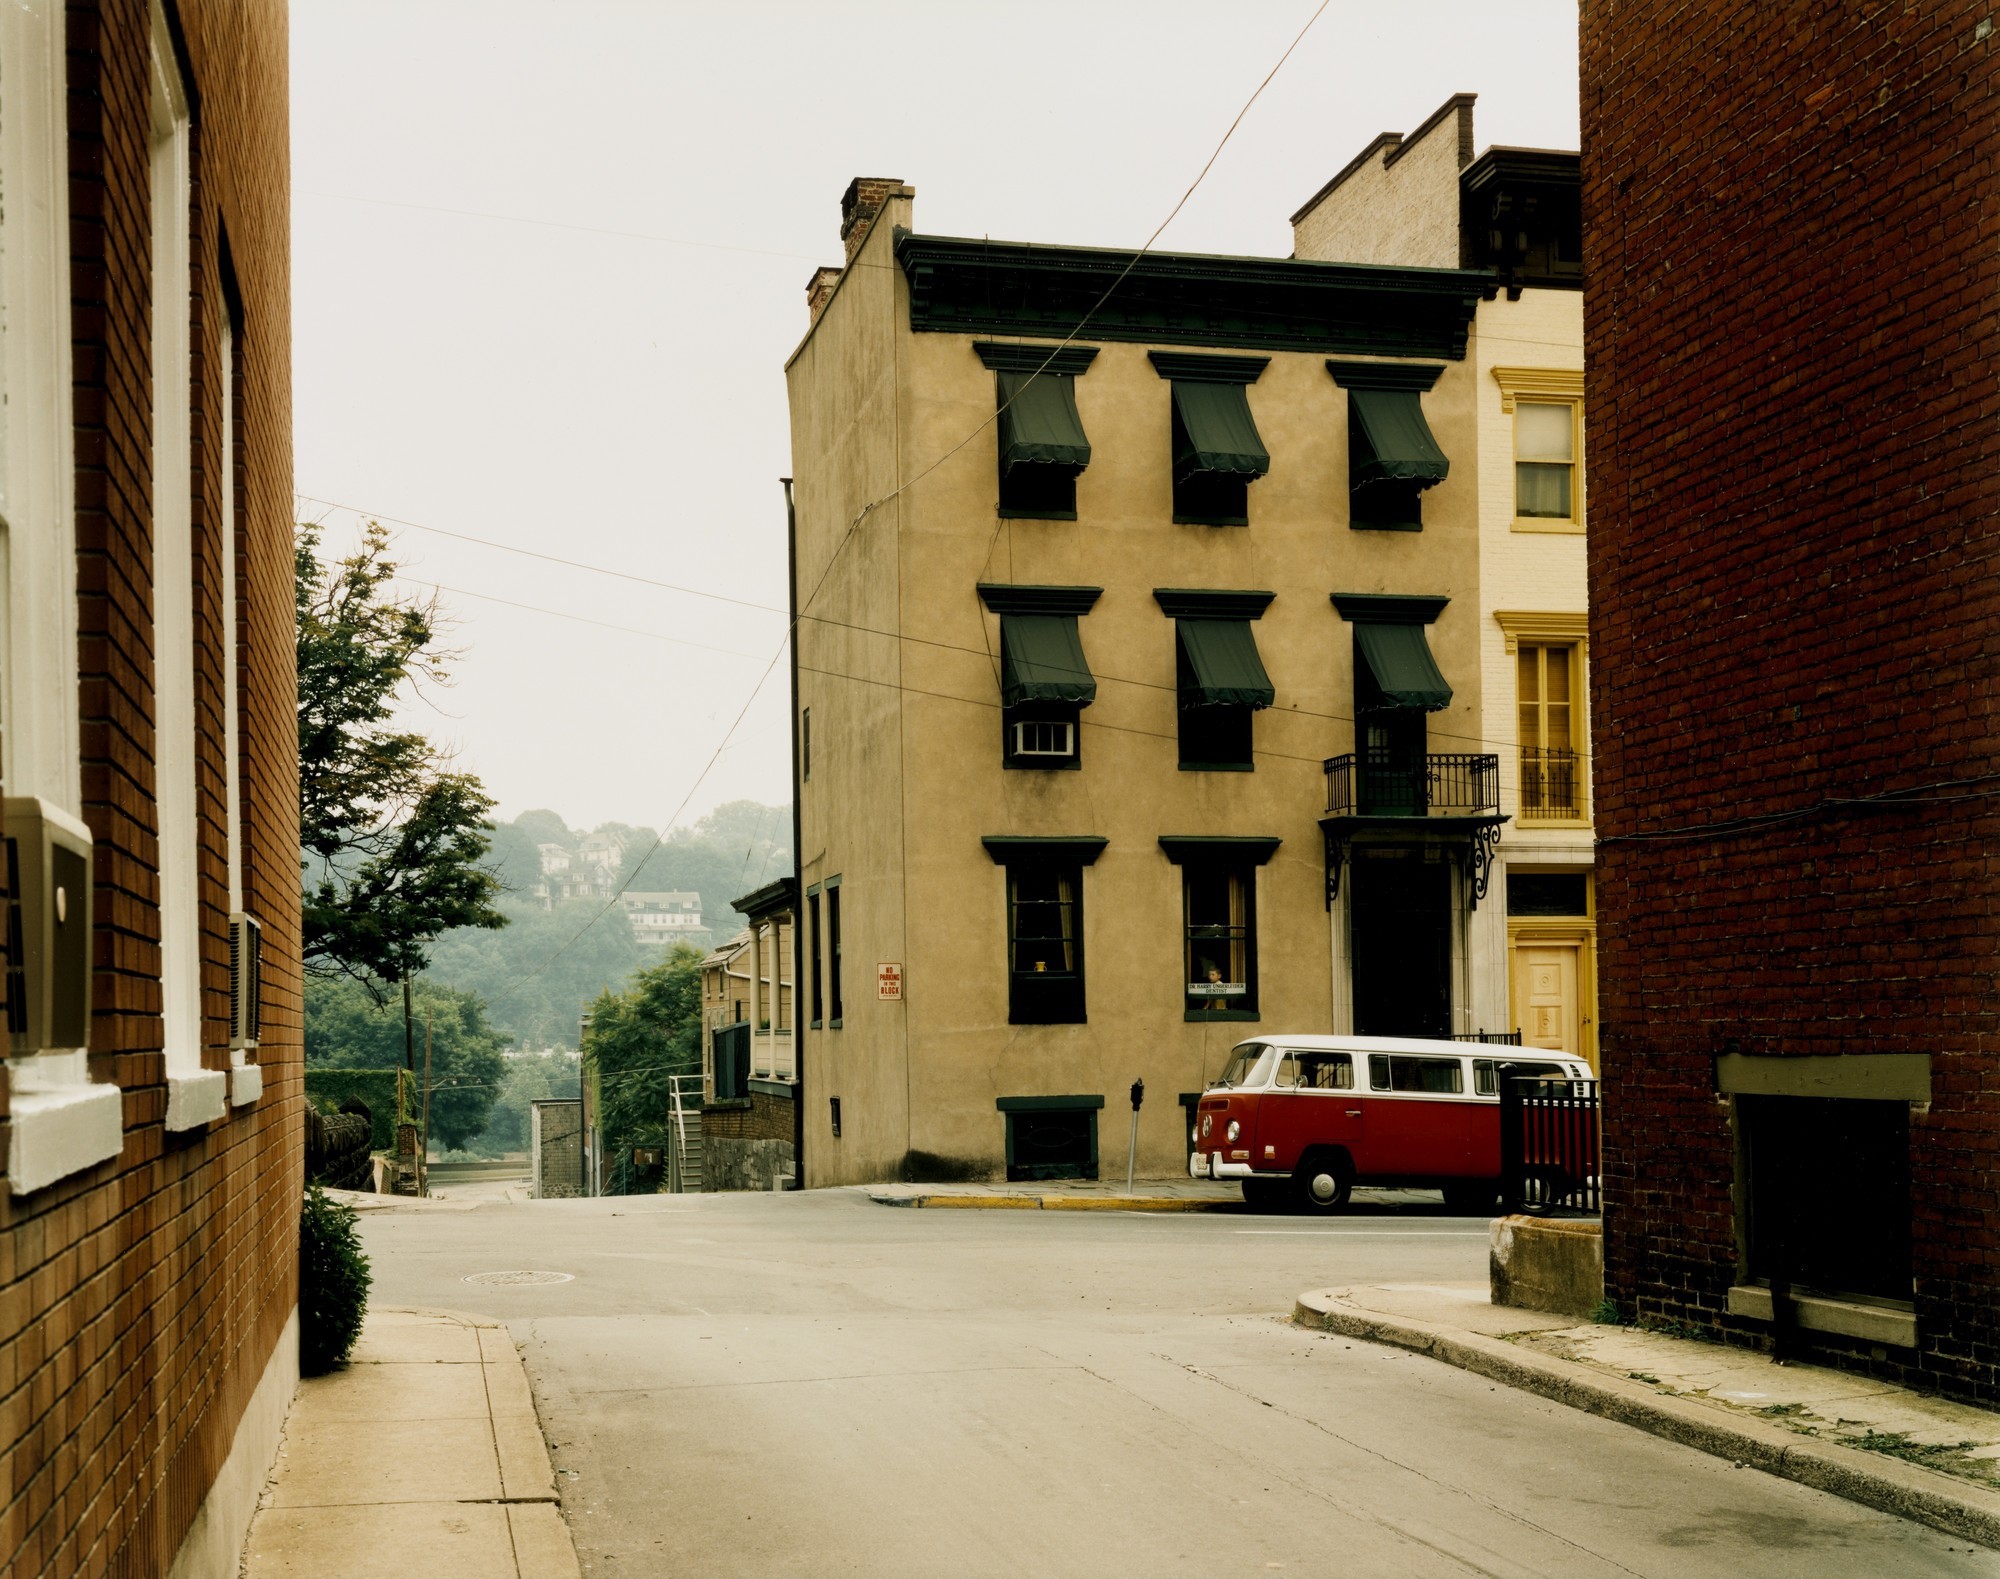 Истон, Пенсильвания, 1974. Автор Стивен Шор